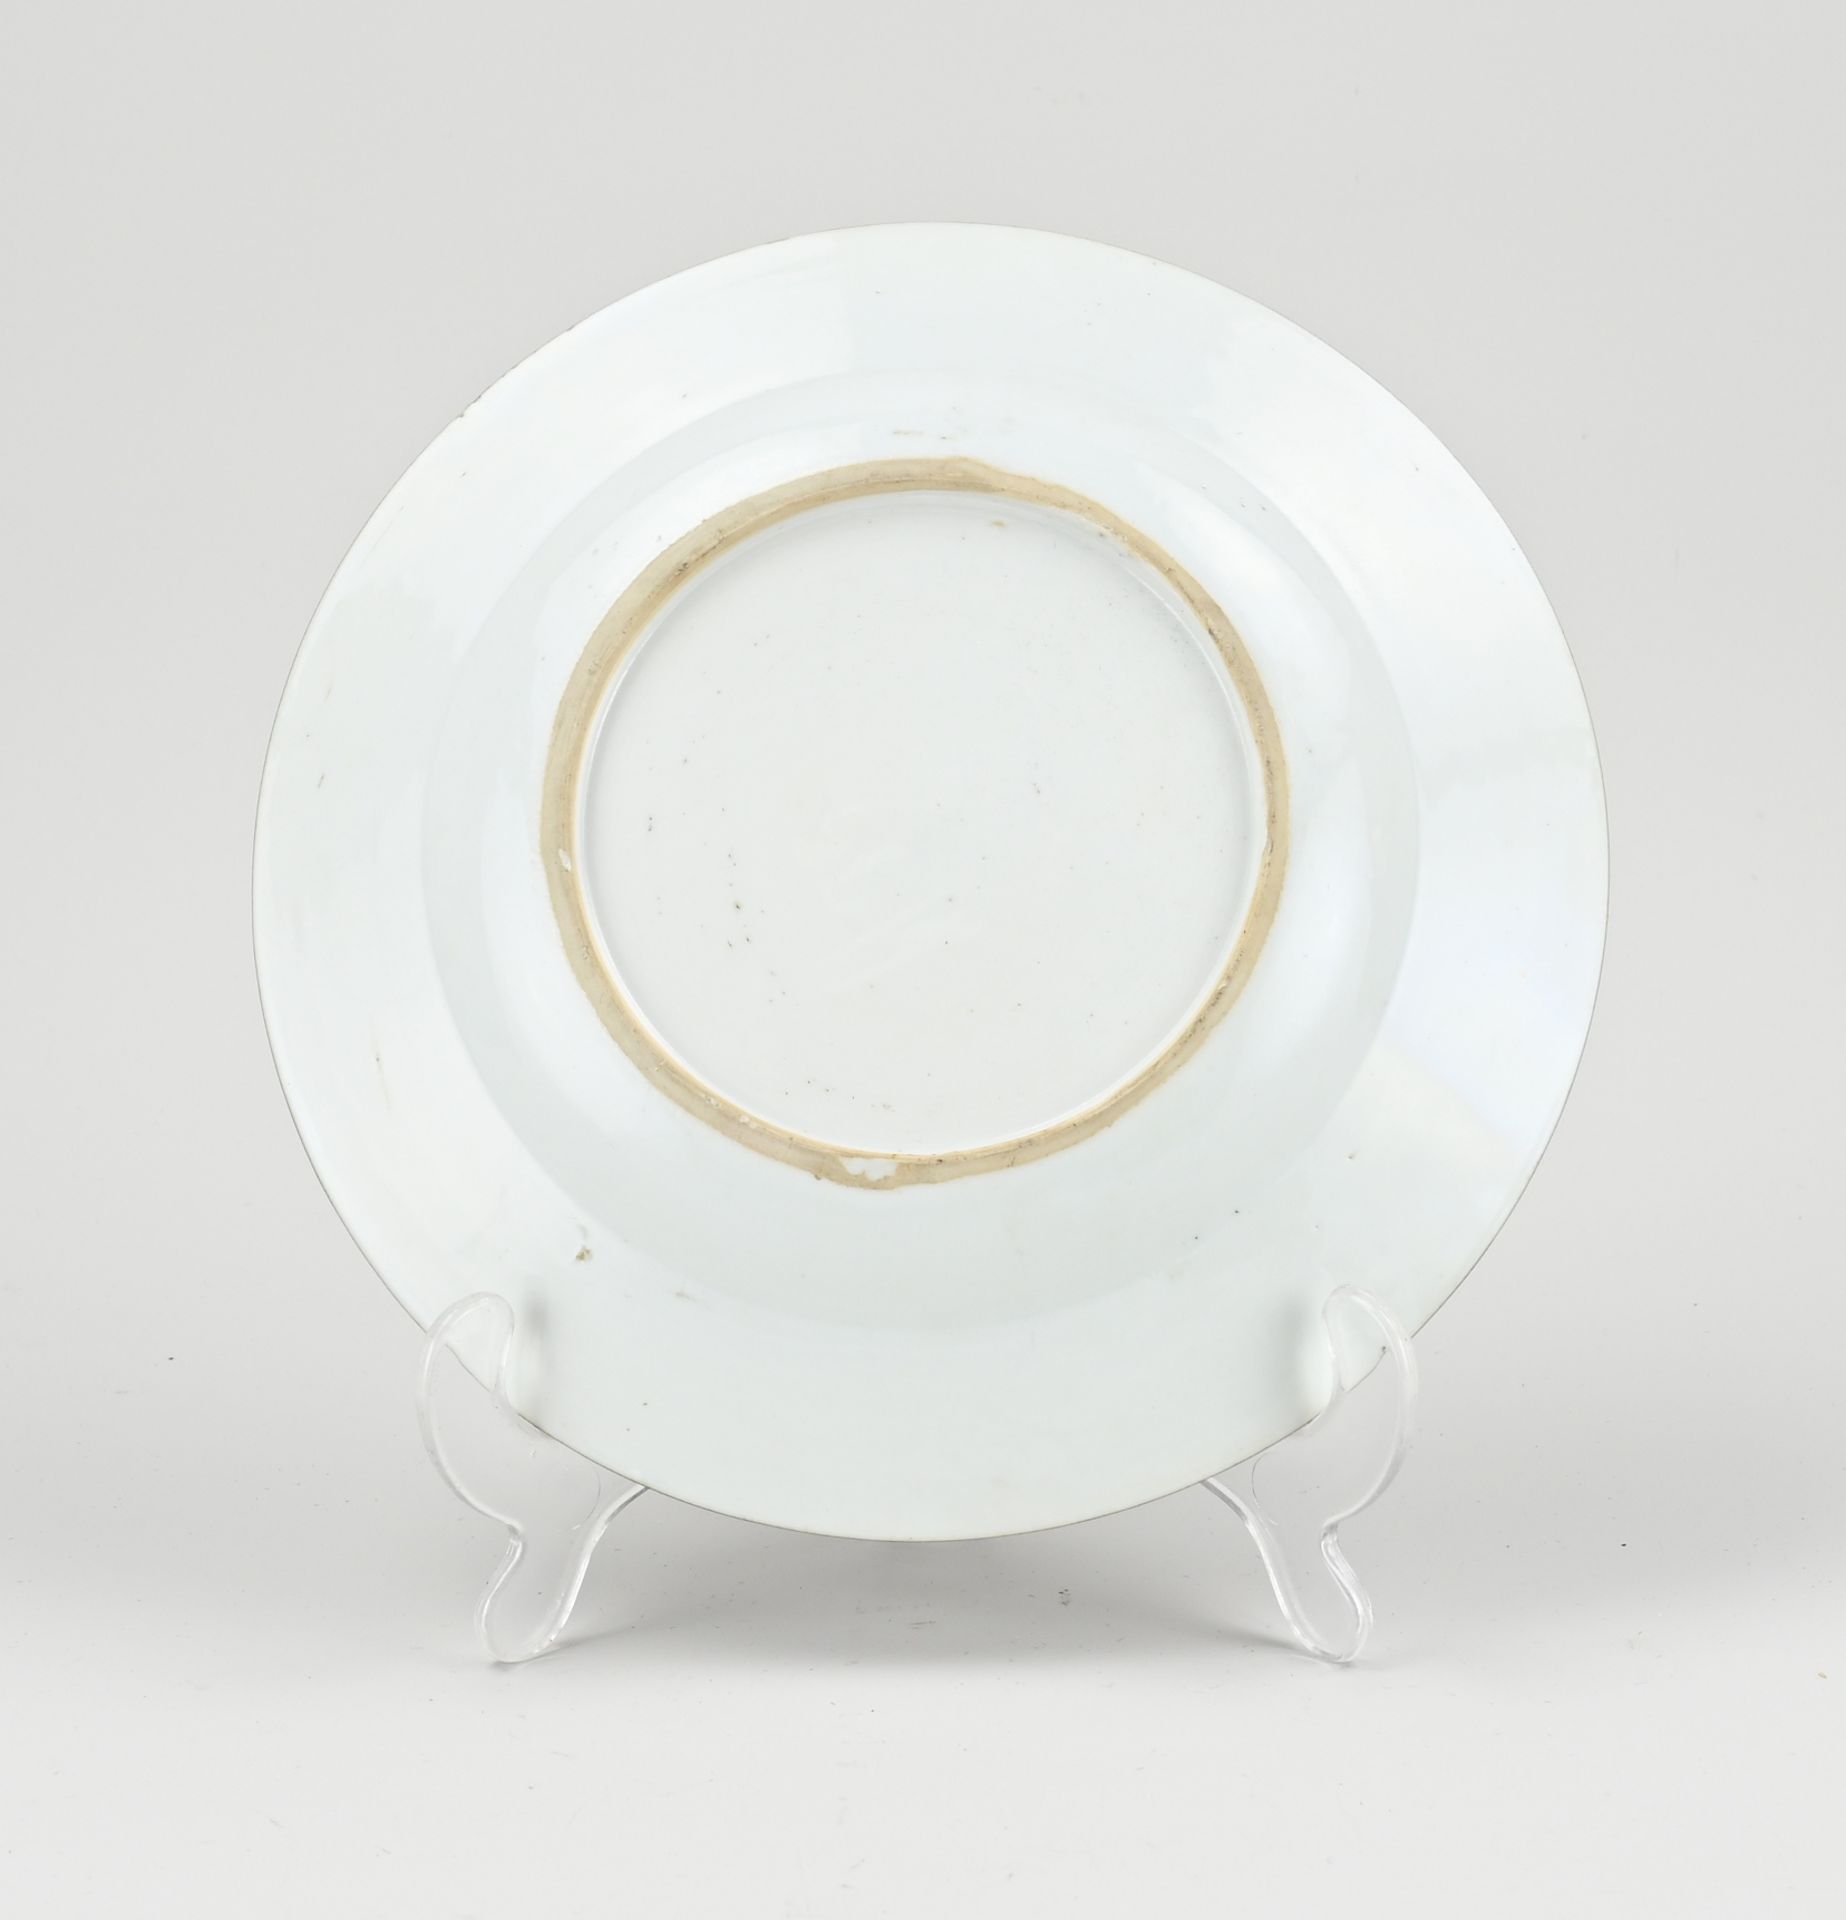 Chinese Imari plate Ø 22.5 cm. - Image 2 of 2